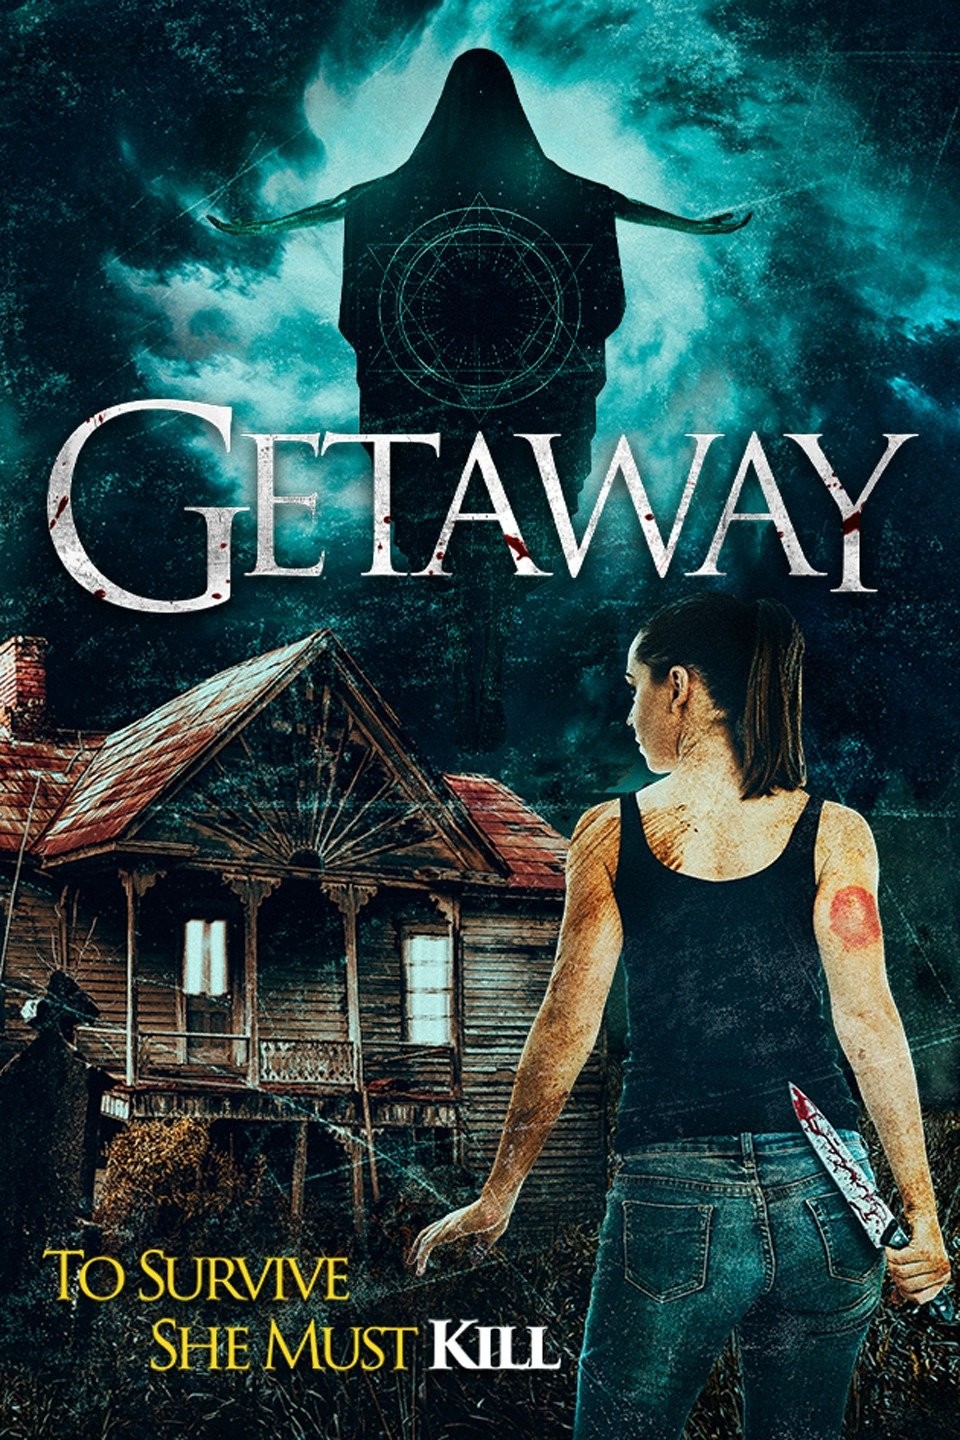 getaway movie